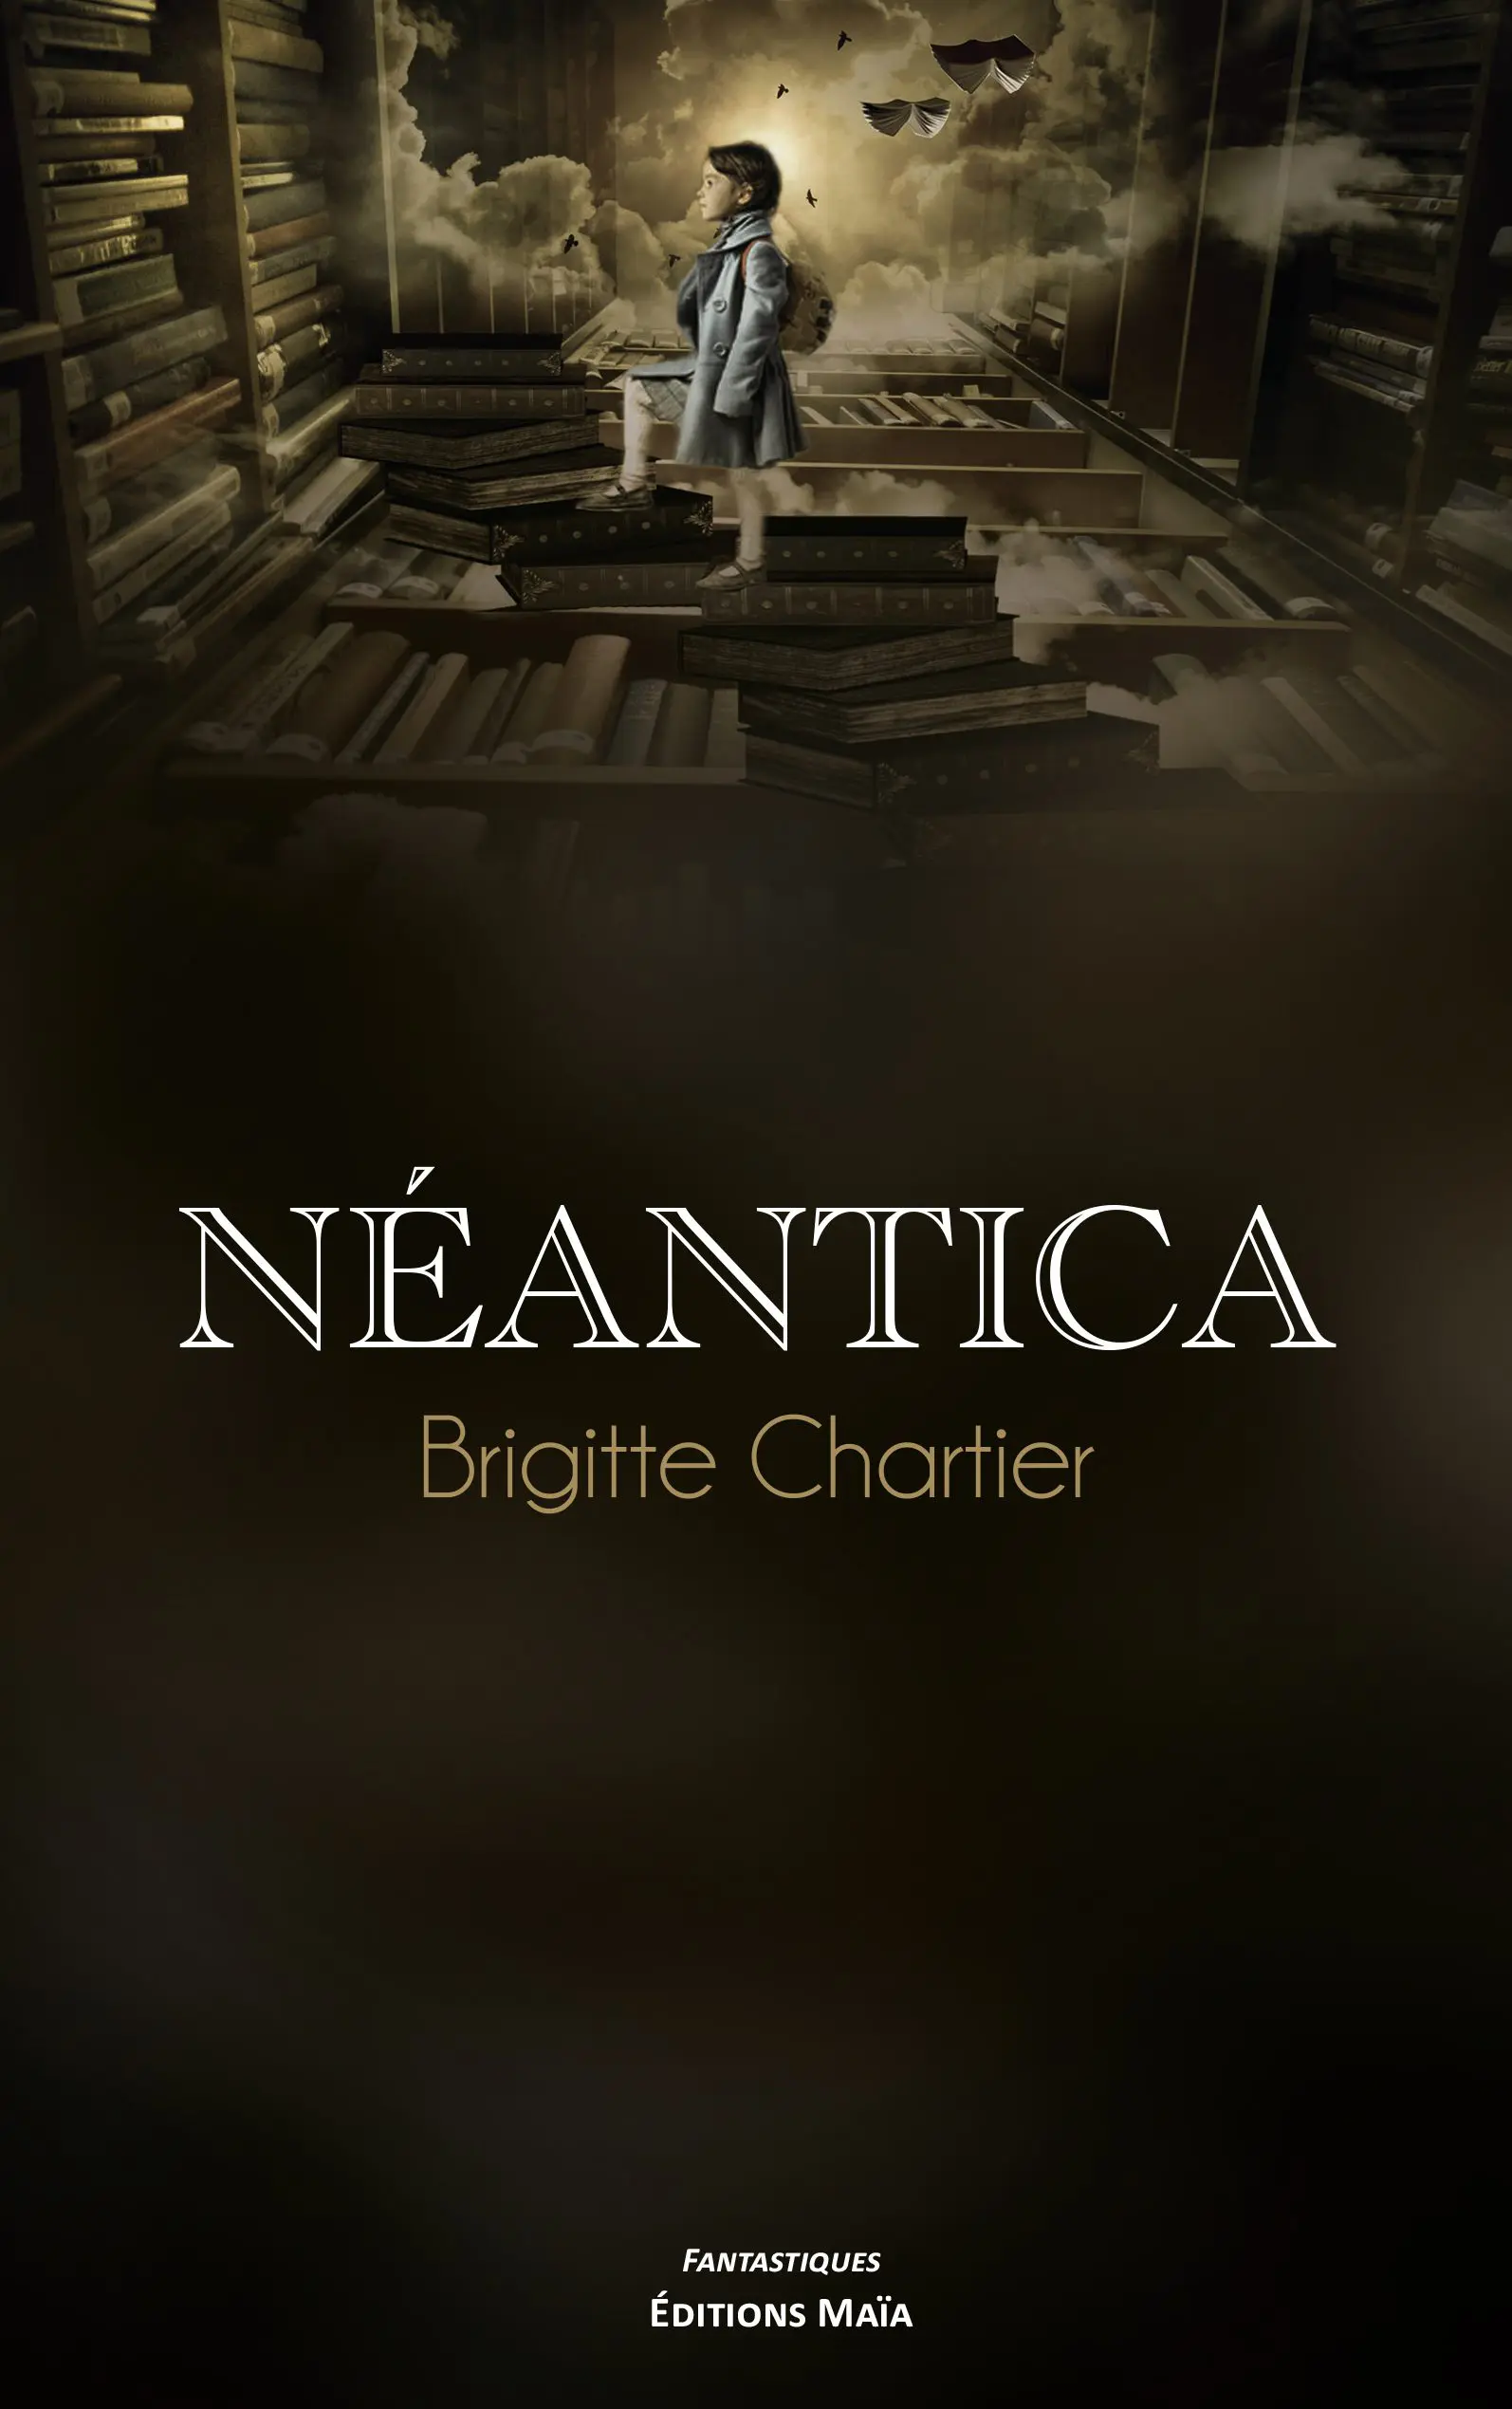 Entretien avec Brigitte Chartier – Néantica